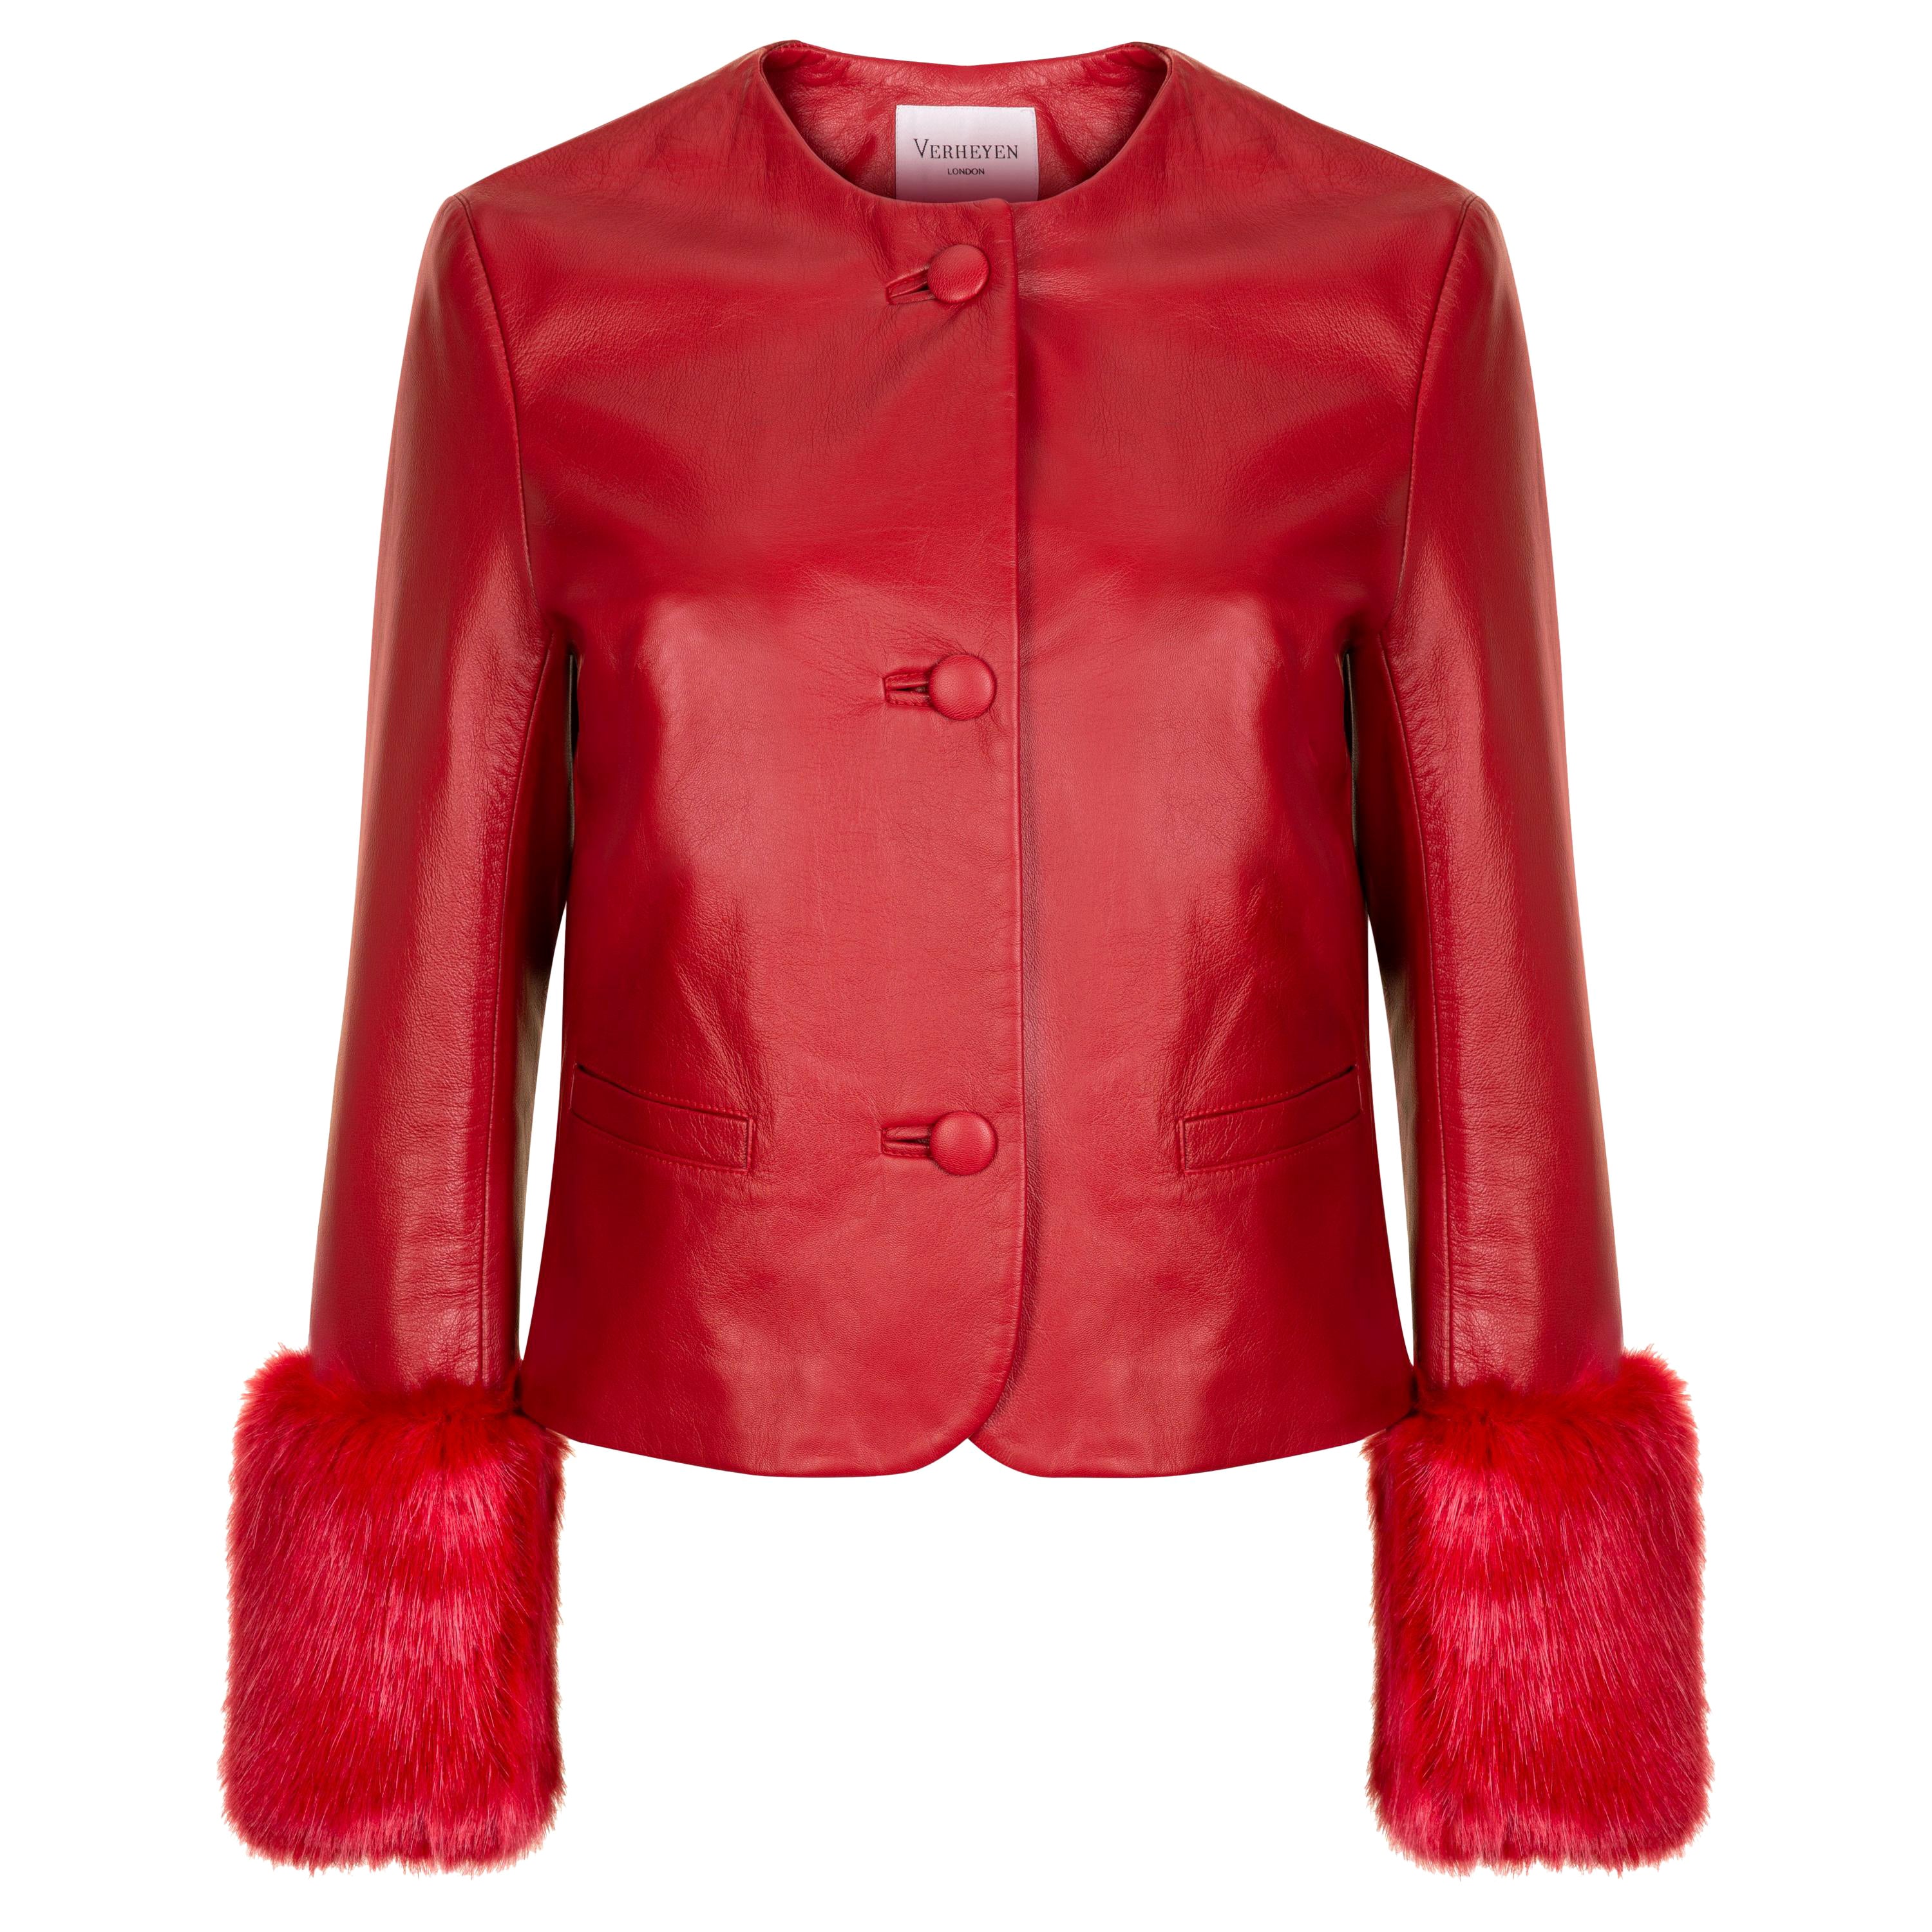 Veste courte Vita de Verheyen en cuir rouge avec fausse fourrure - Taille UK 12 en vente